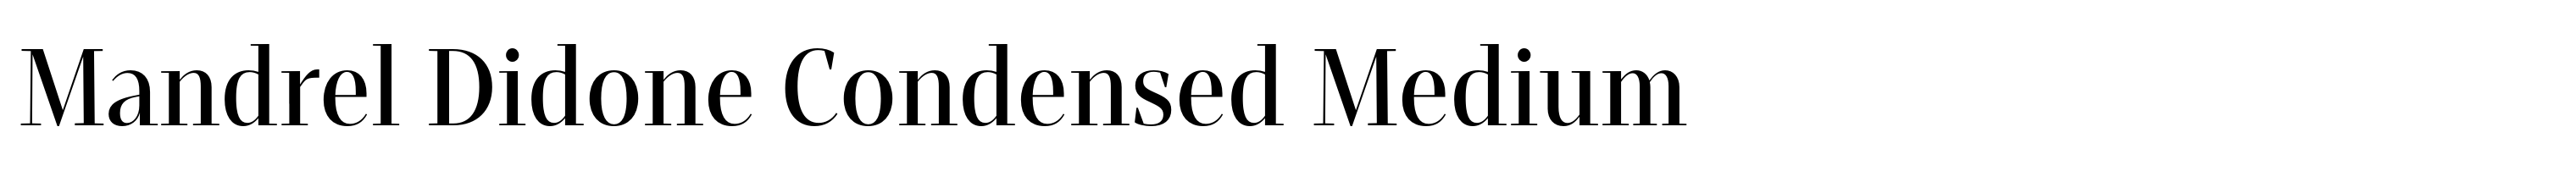 Mandrel Didone Condensed Medium